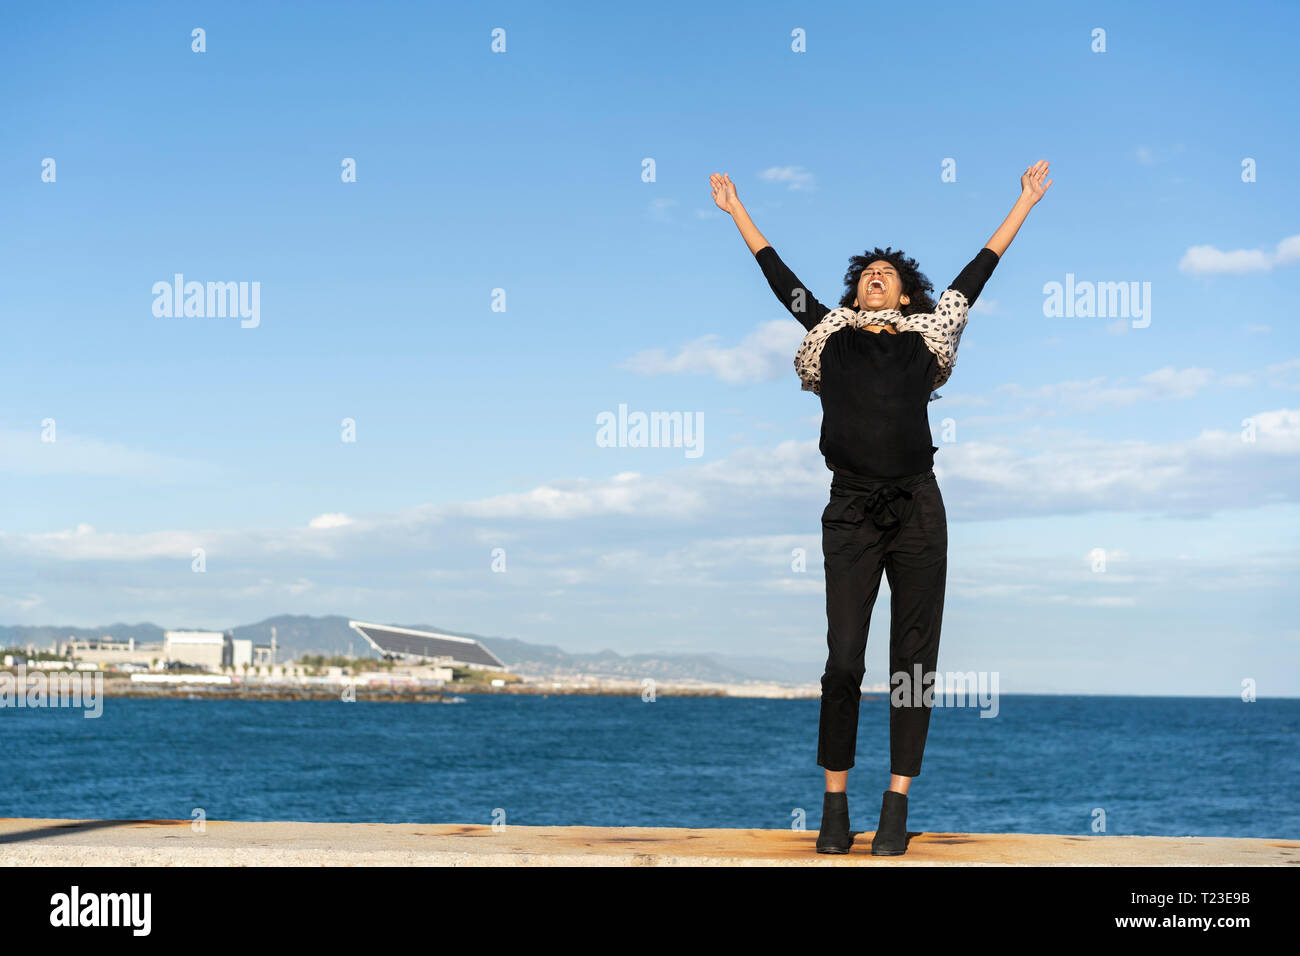 Espagne, Barcelone, la femme vêtue de noir debout sur le mur en criant de joie Banque D'Images